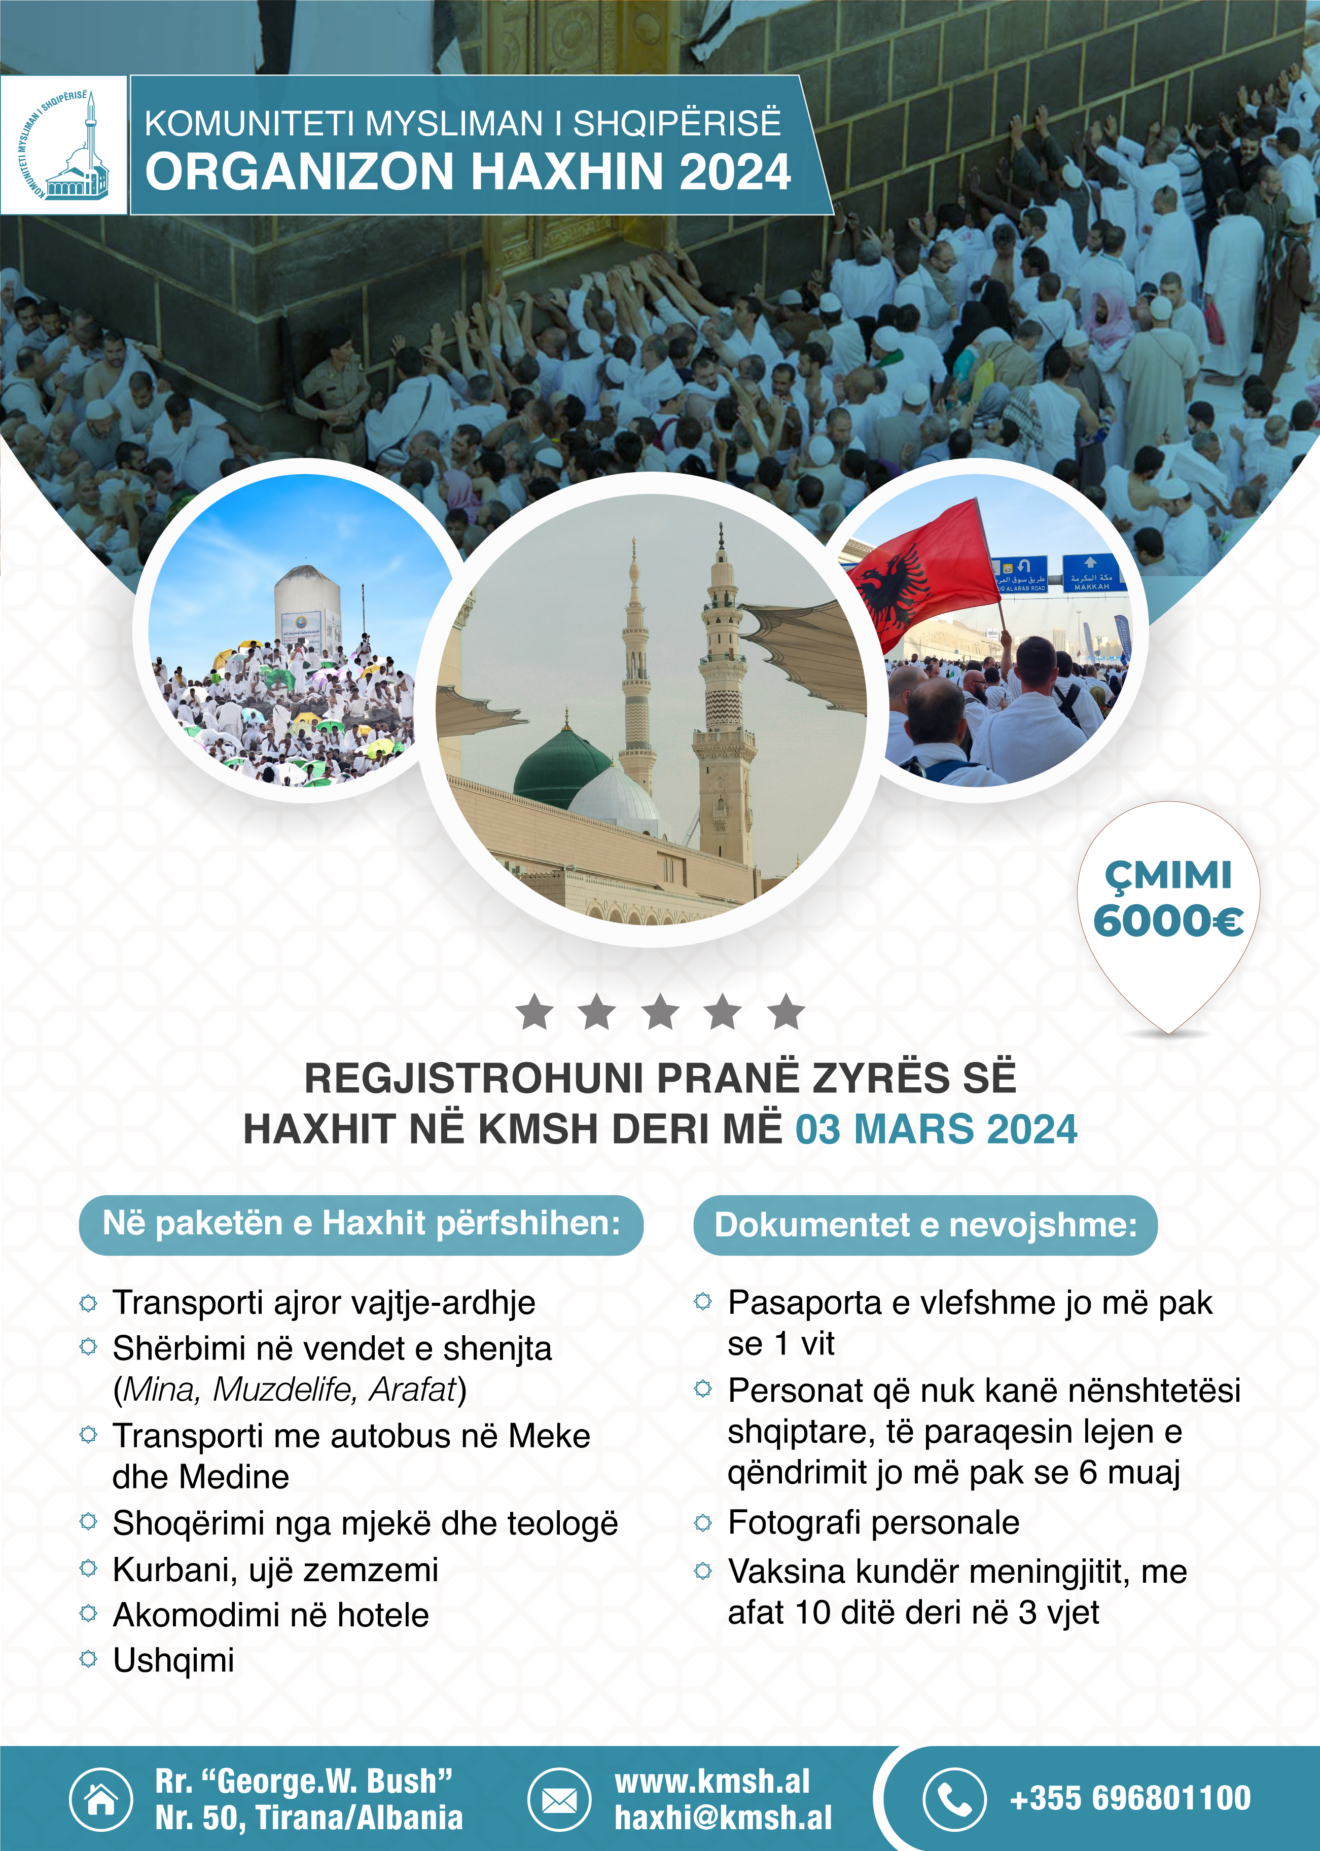 Regjistrohu për haxhin 2024 Komuniteti Mysliman i Shqipërisë